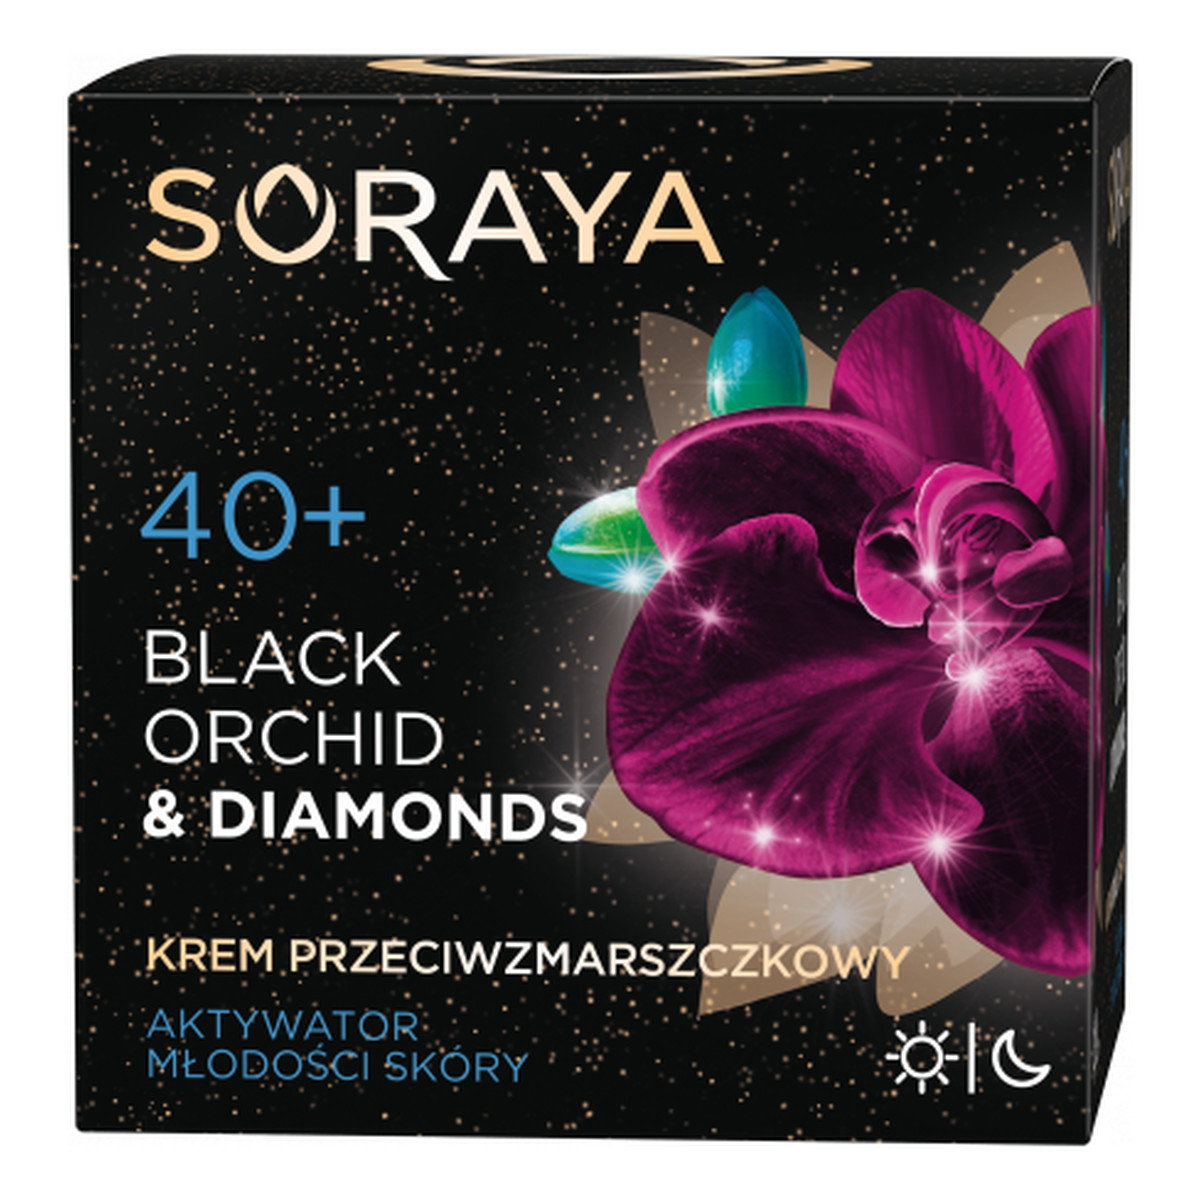 Soraya Black Orchid & Diamonds 40+ przeciwzmarszczkowy krem do twarzy na dzień i na noc 50ml